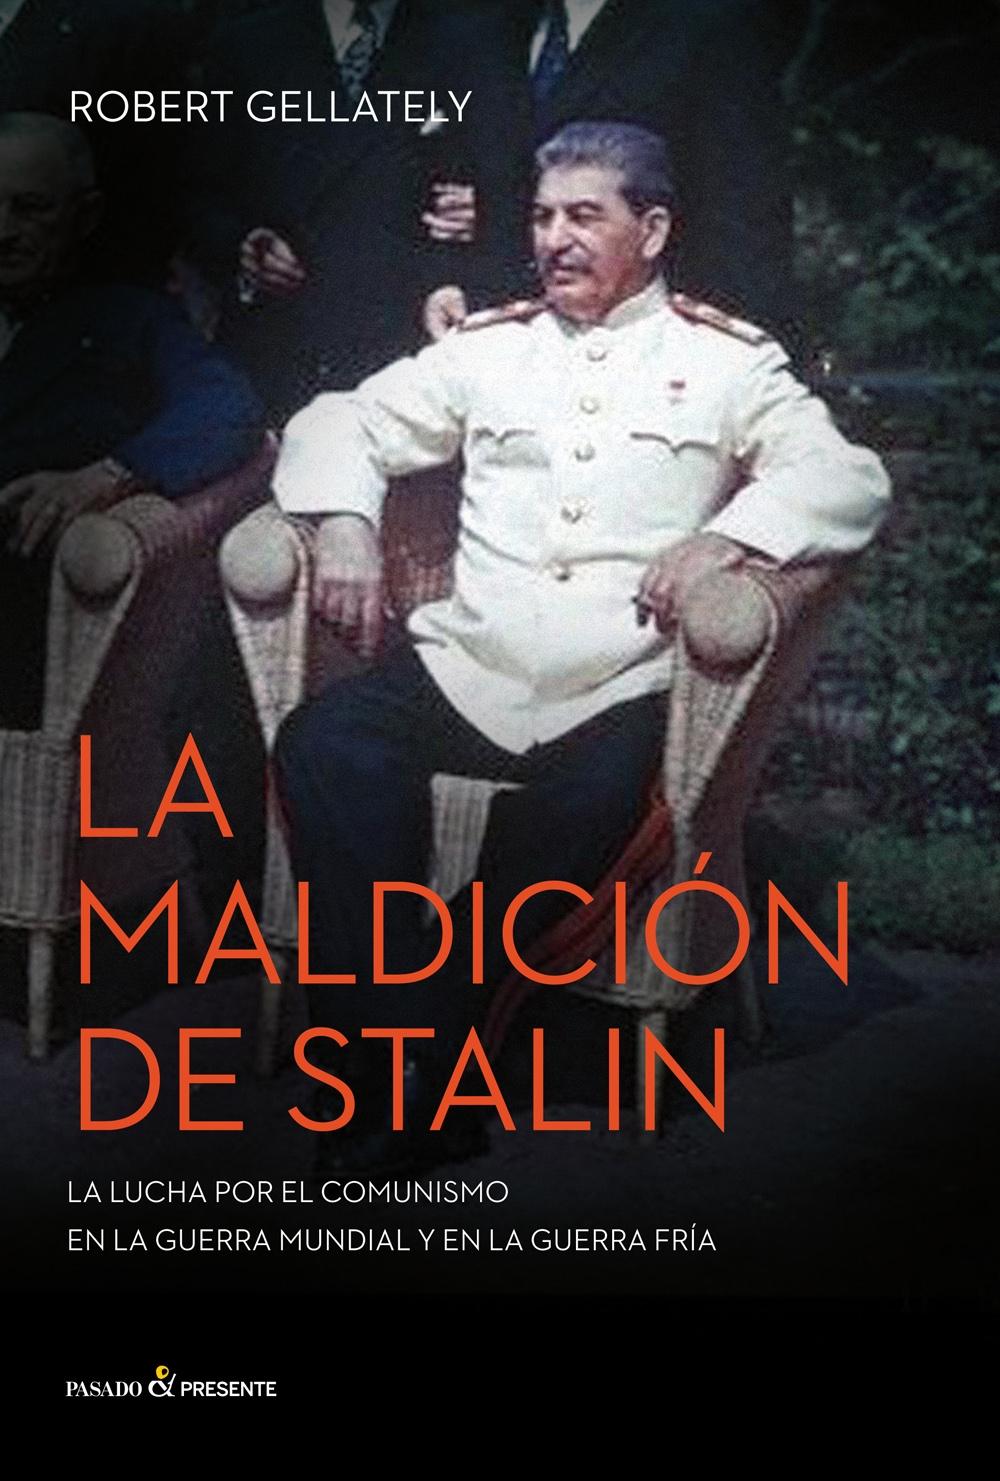 La maldición de Stalin "La lucha por el comunismo en la guerra mundial y en la guerra fría". 